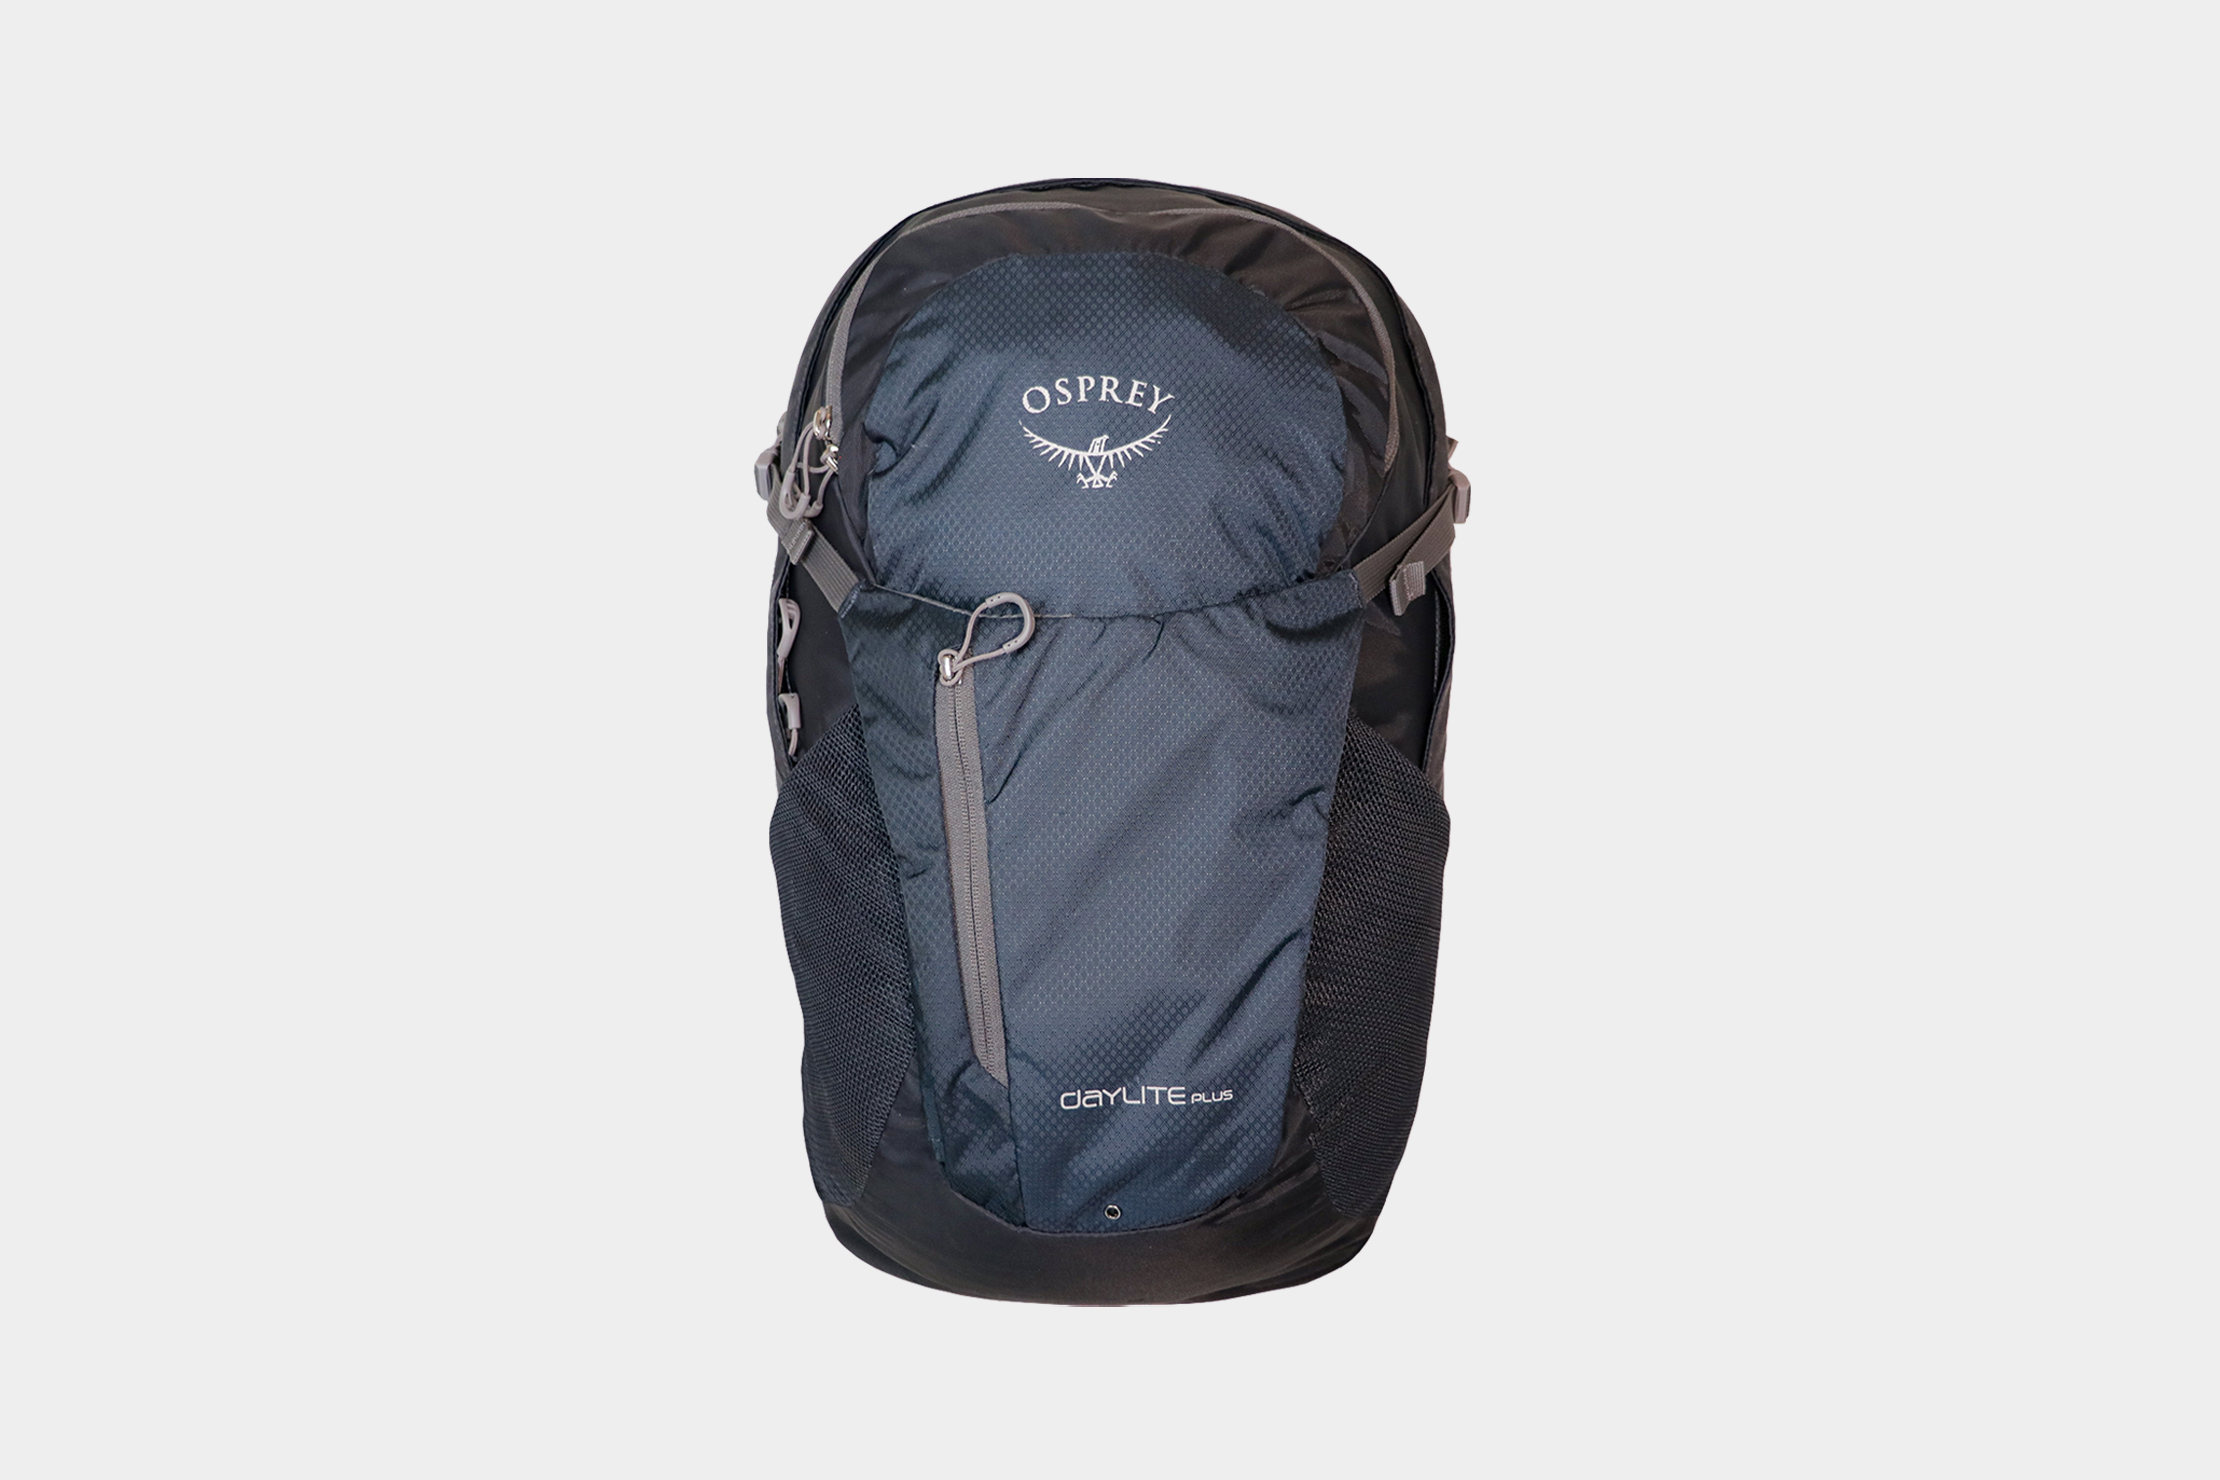 Osprey Daylite Commuter Backpack, Black